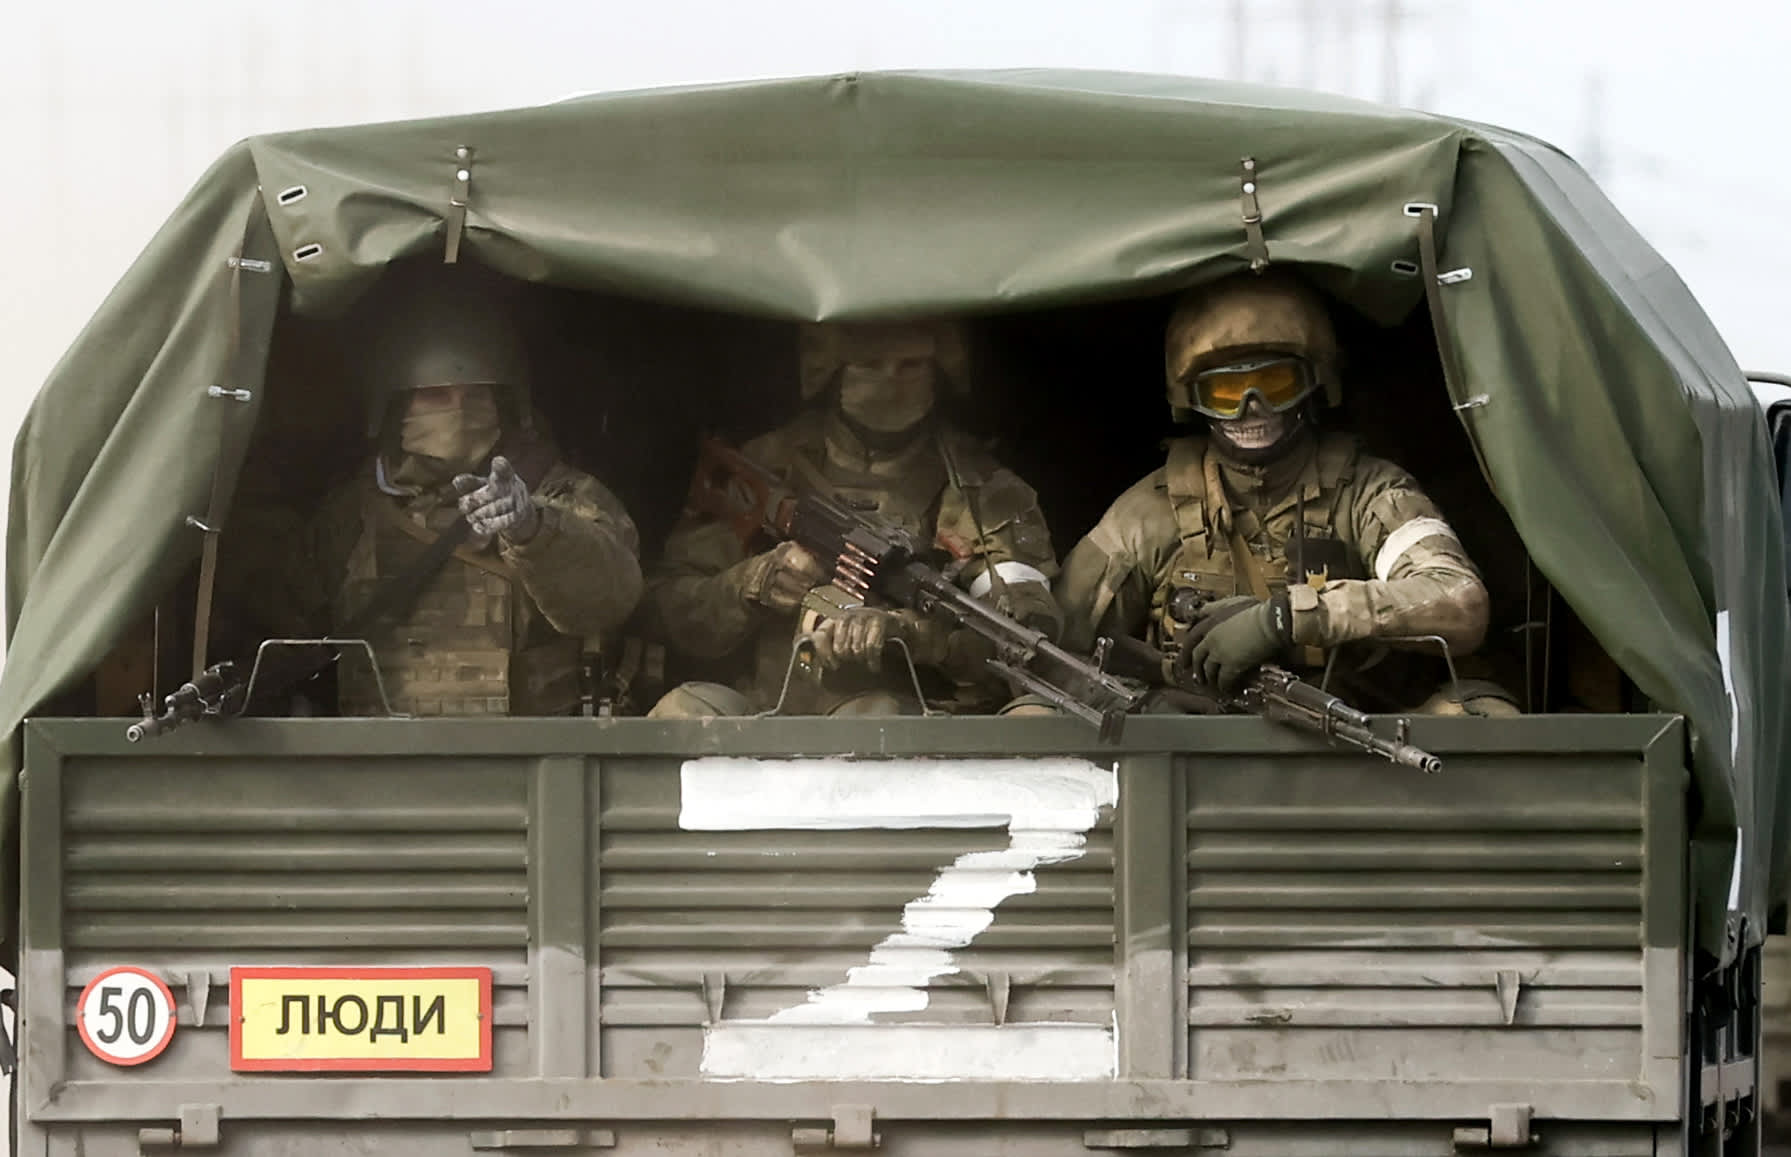 Photos show Russia's invasion of Ukraine